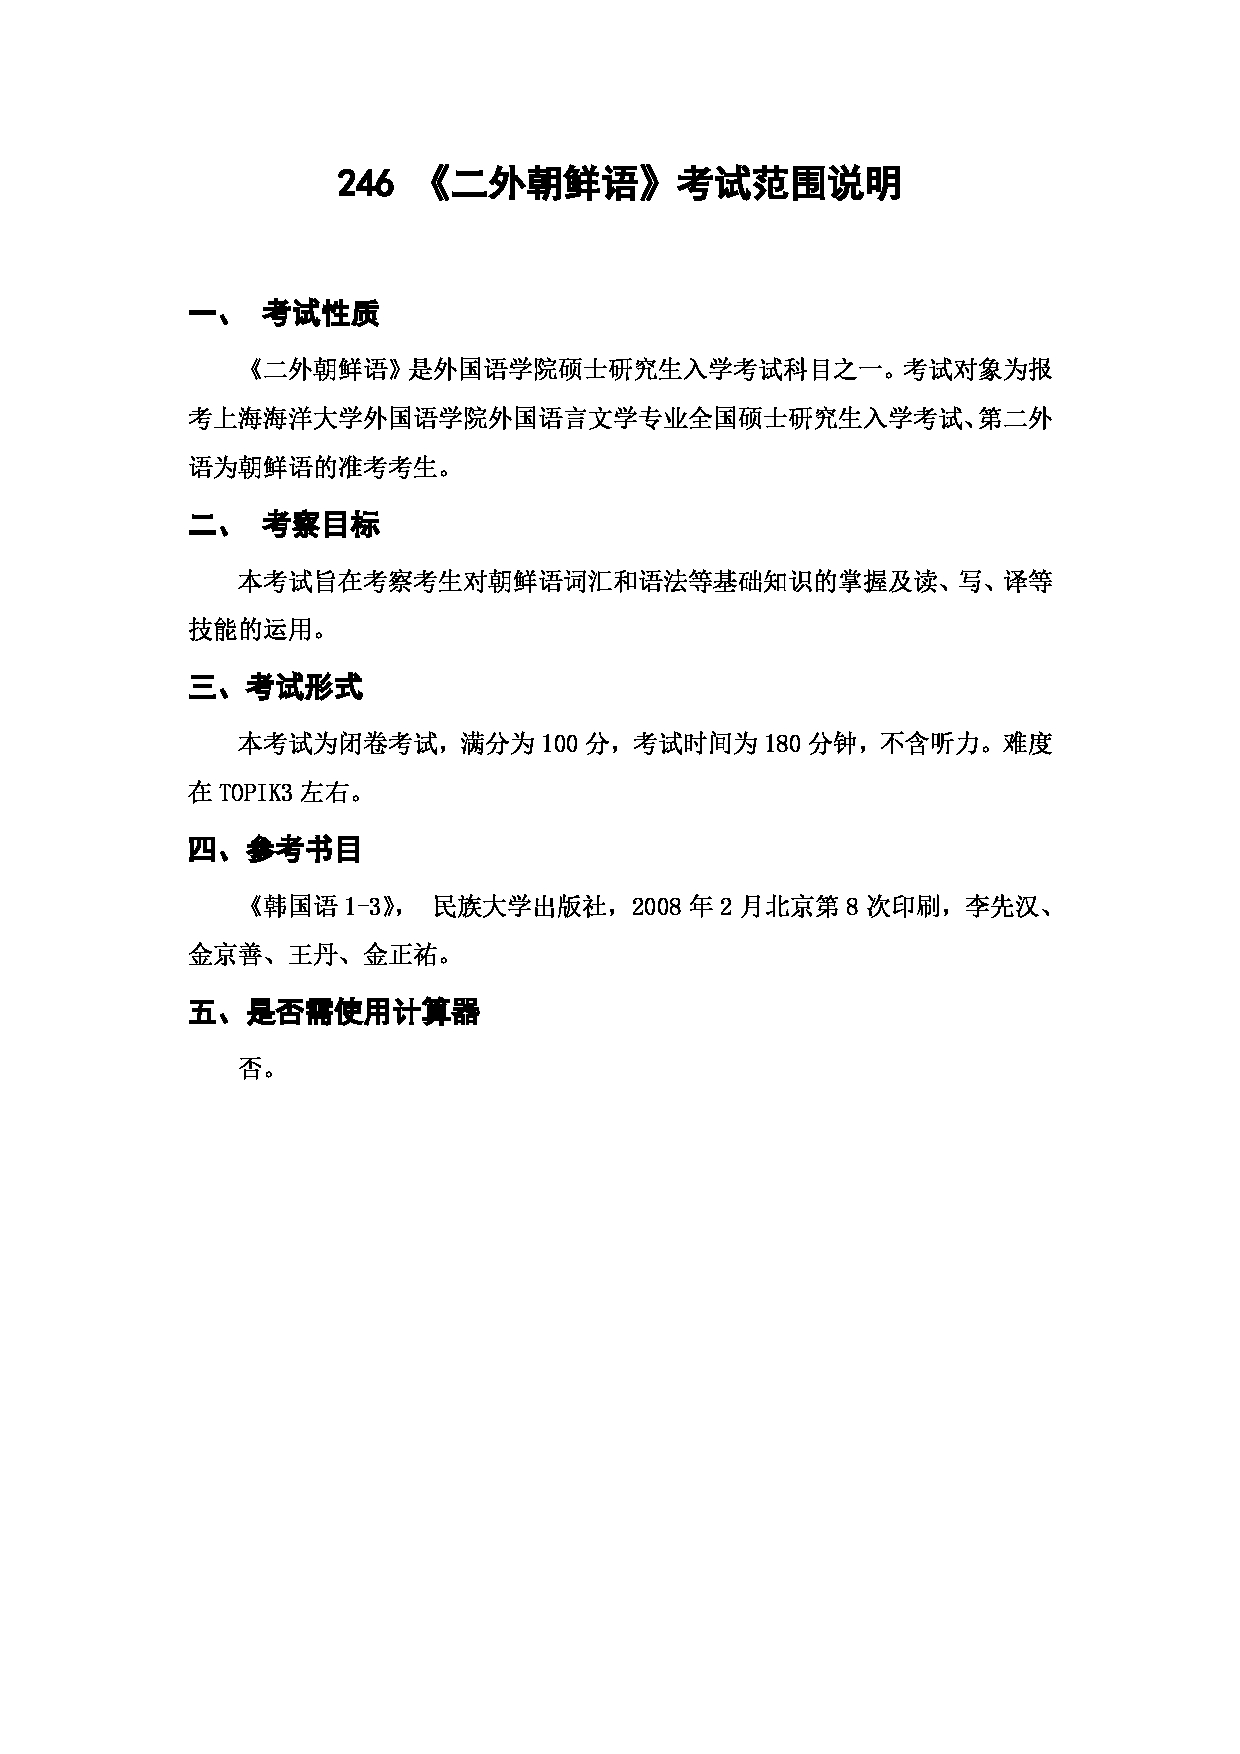 上海海洋大学2023年考研自命题科目 246《二外朝鲜语》 考试范围第1页